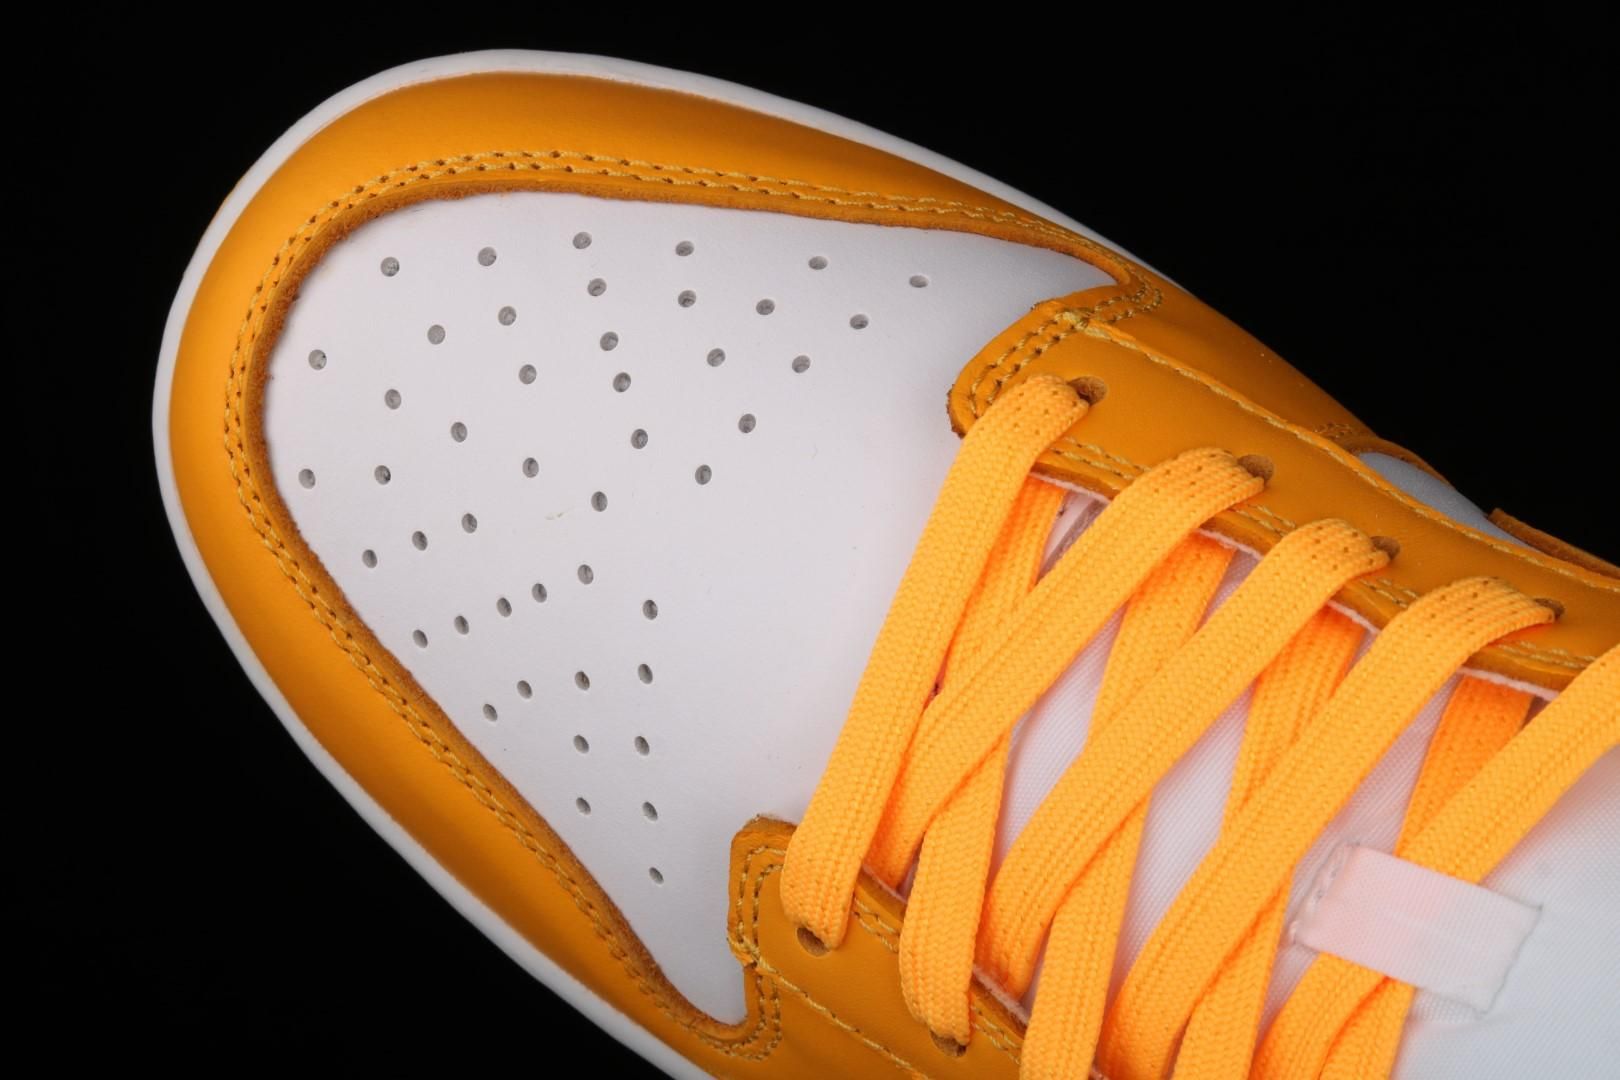 NikeWMNS Dunk Low - Laser Orange